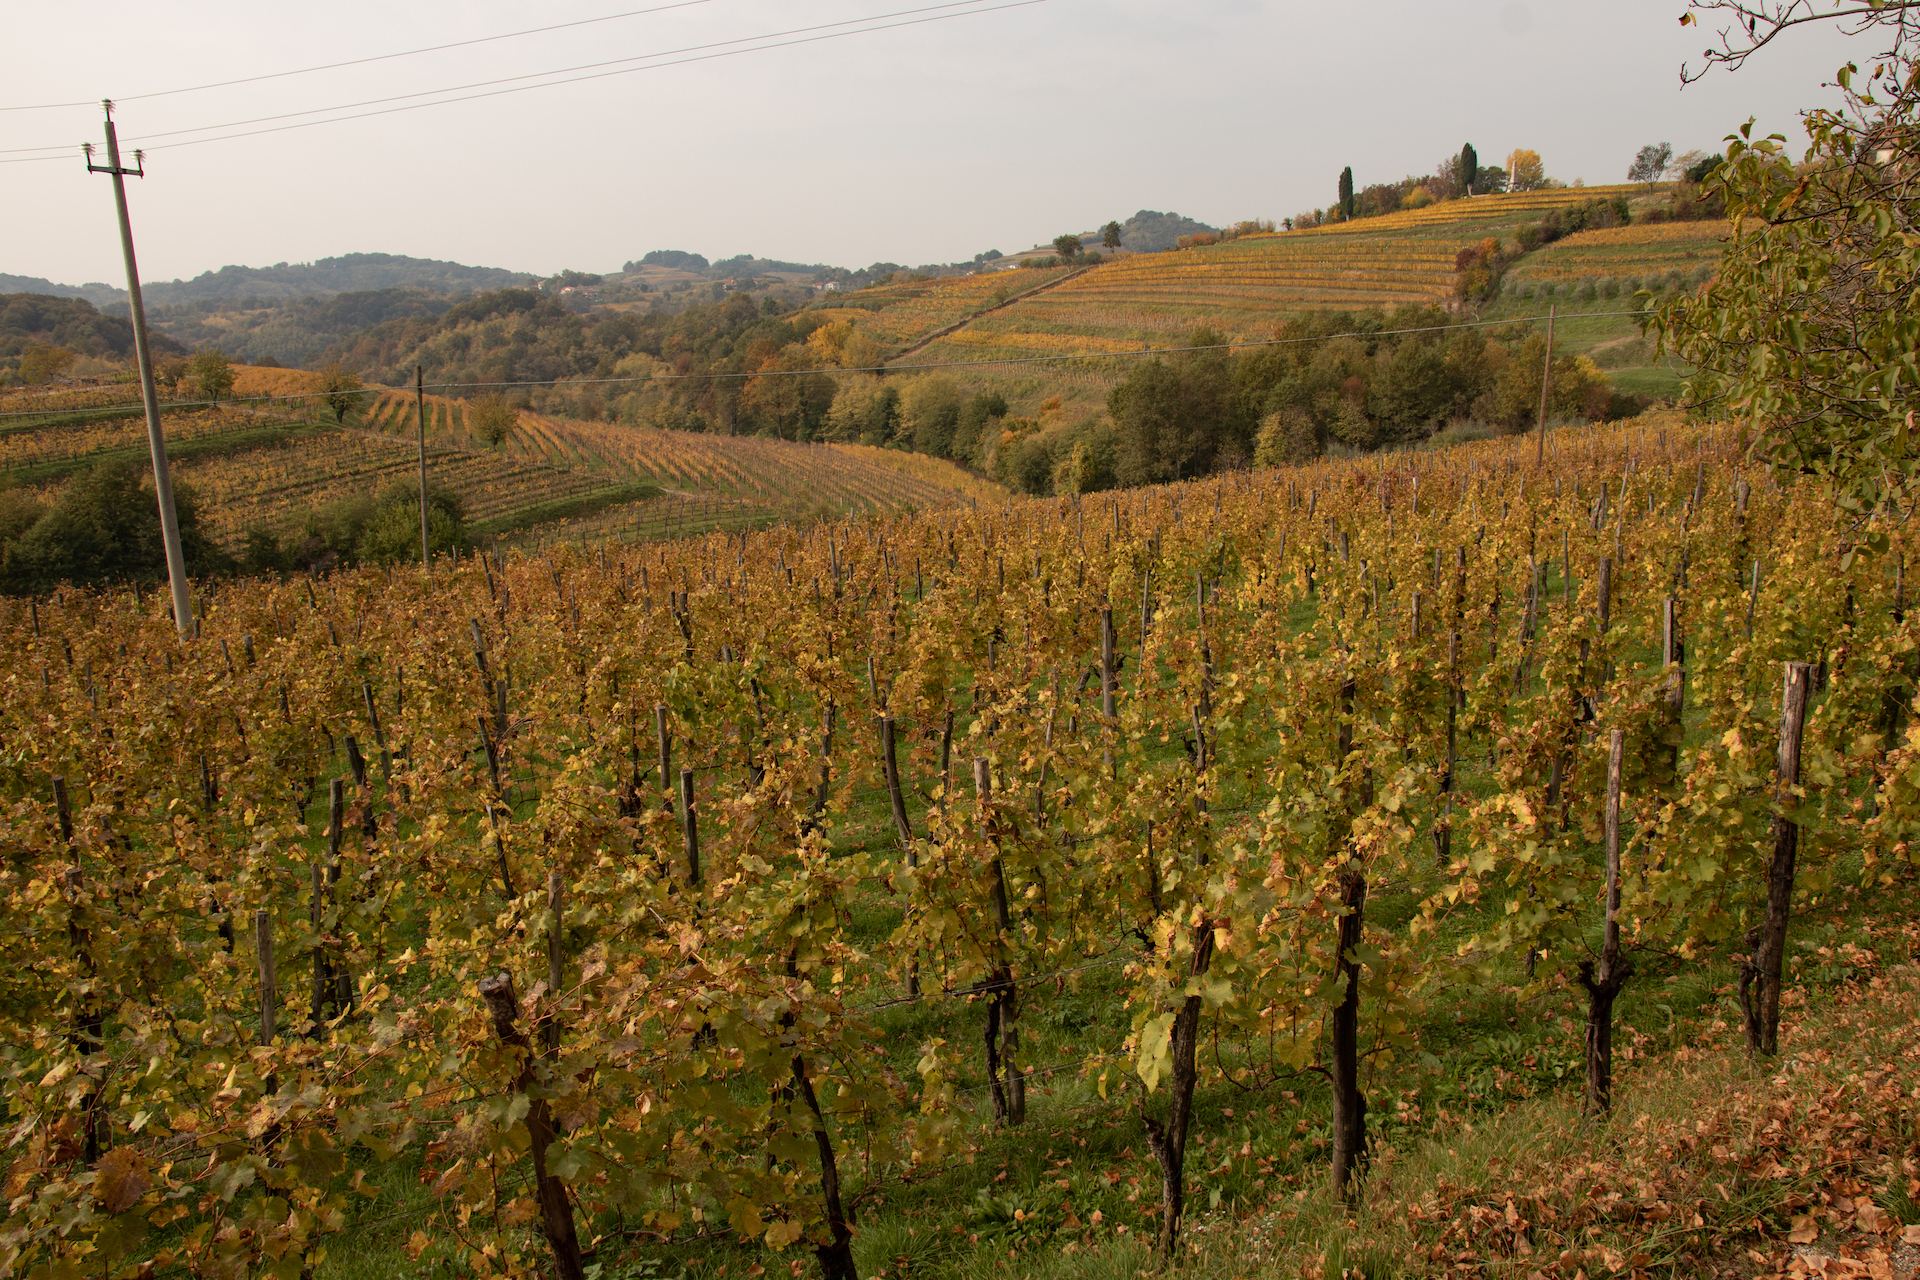 Enotour #002 - Una trasferta ai confini del vino | Friuli, una terra di paradossi | Oslavia/Cividale La Castellada Primosic Princic Flaibani